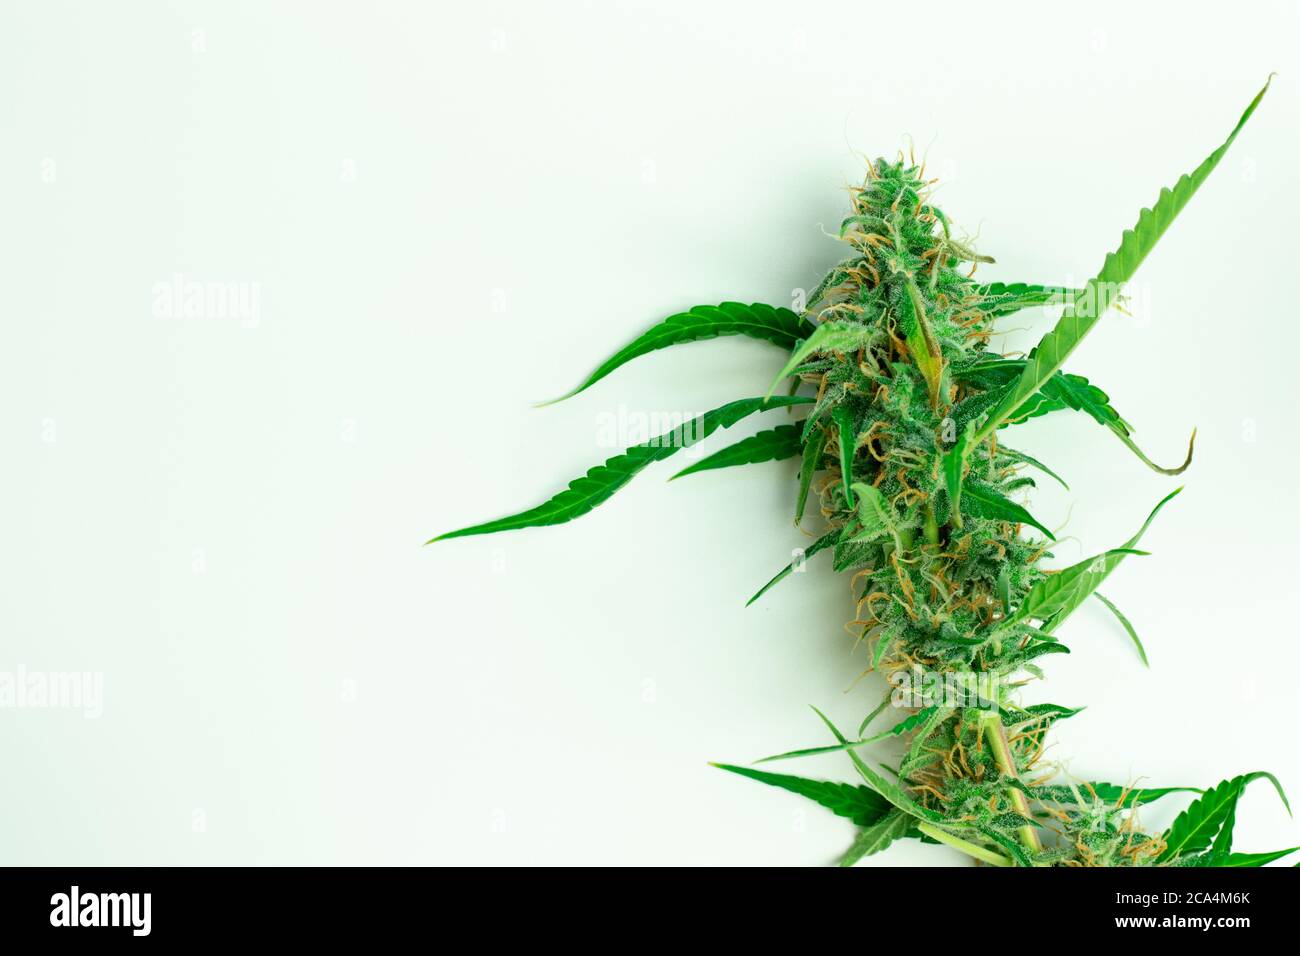 Legalización Del Cannabis. Pipa Para Fumar Marihuana CBD Y THC En Bud  Fotos, retratos, imágenes y fotografía de archivo libres de derecho. Image  151368661